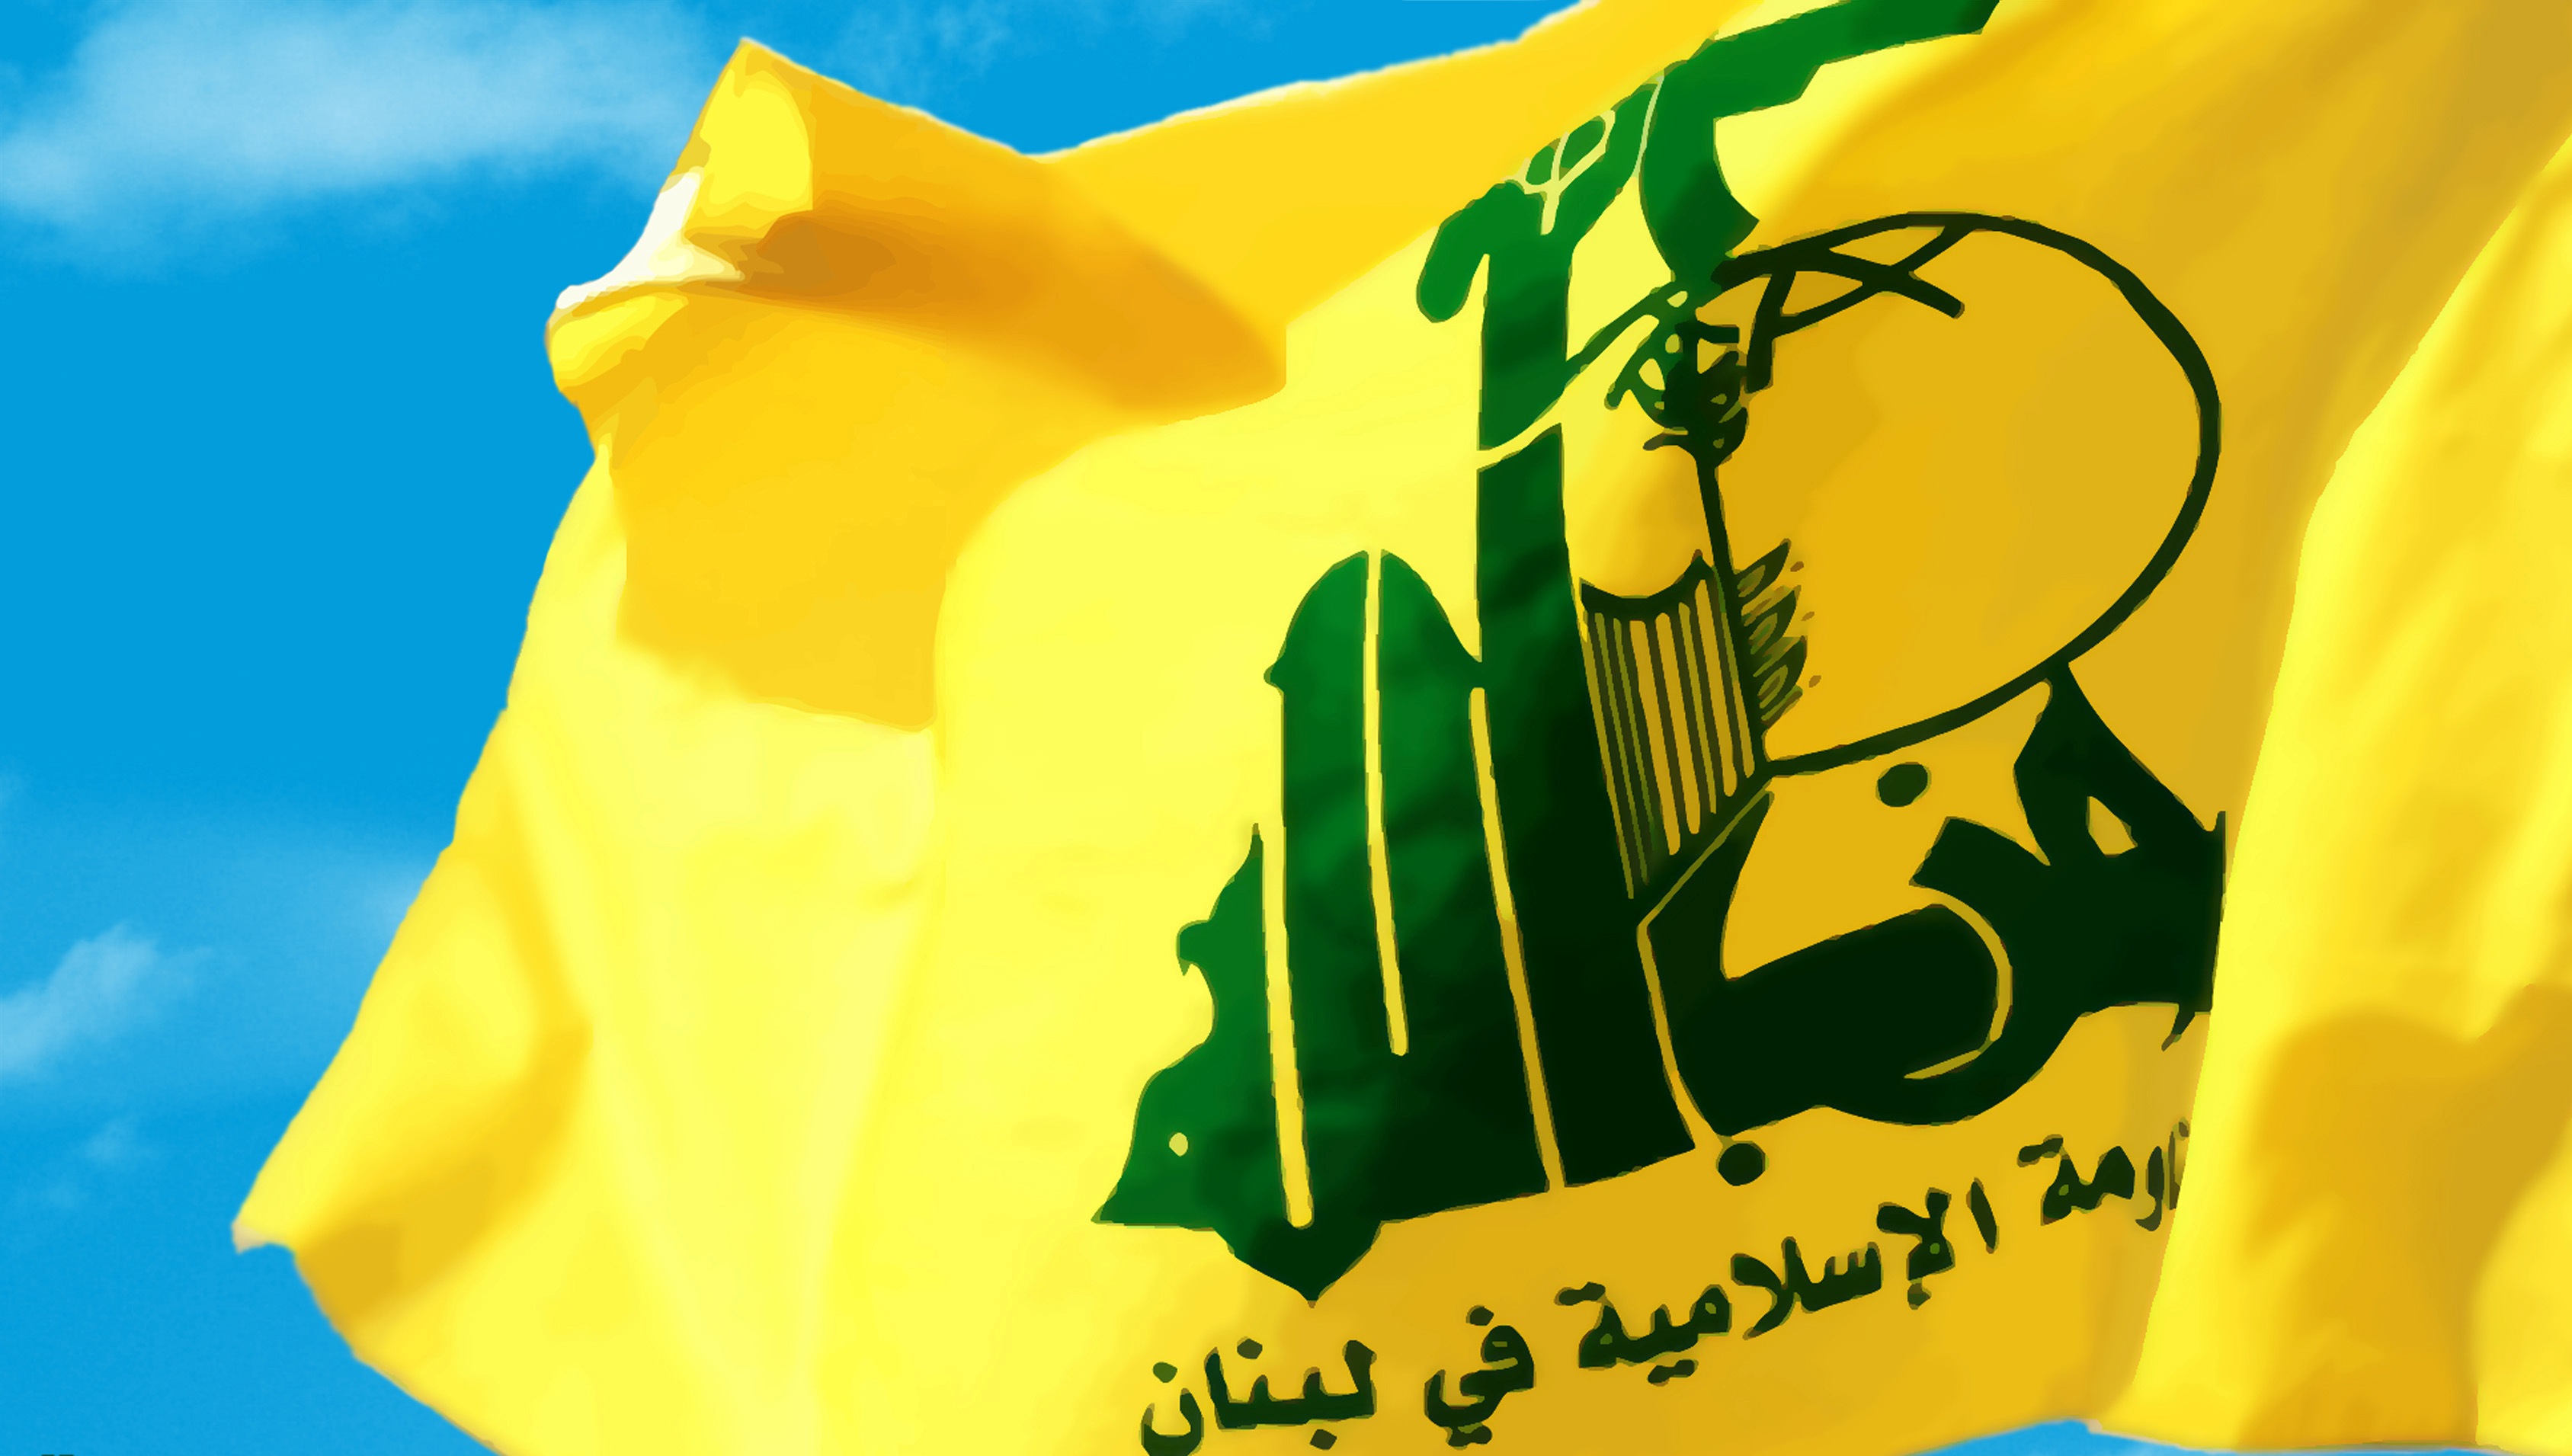 تبریک حزب الله لبنان به مقامات و ملت سوریه به خاطر امن شدن دمشق